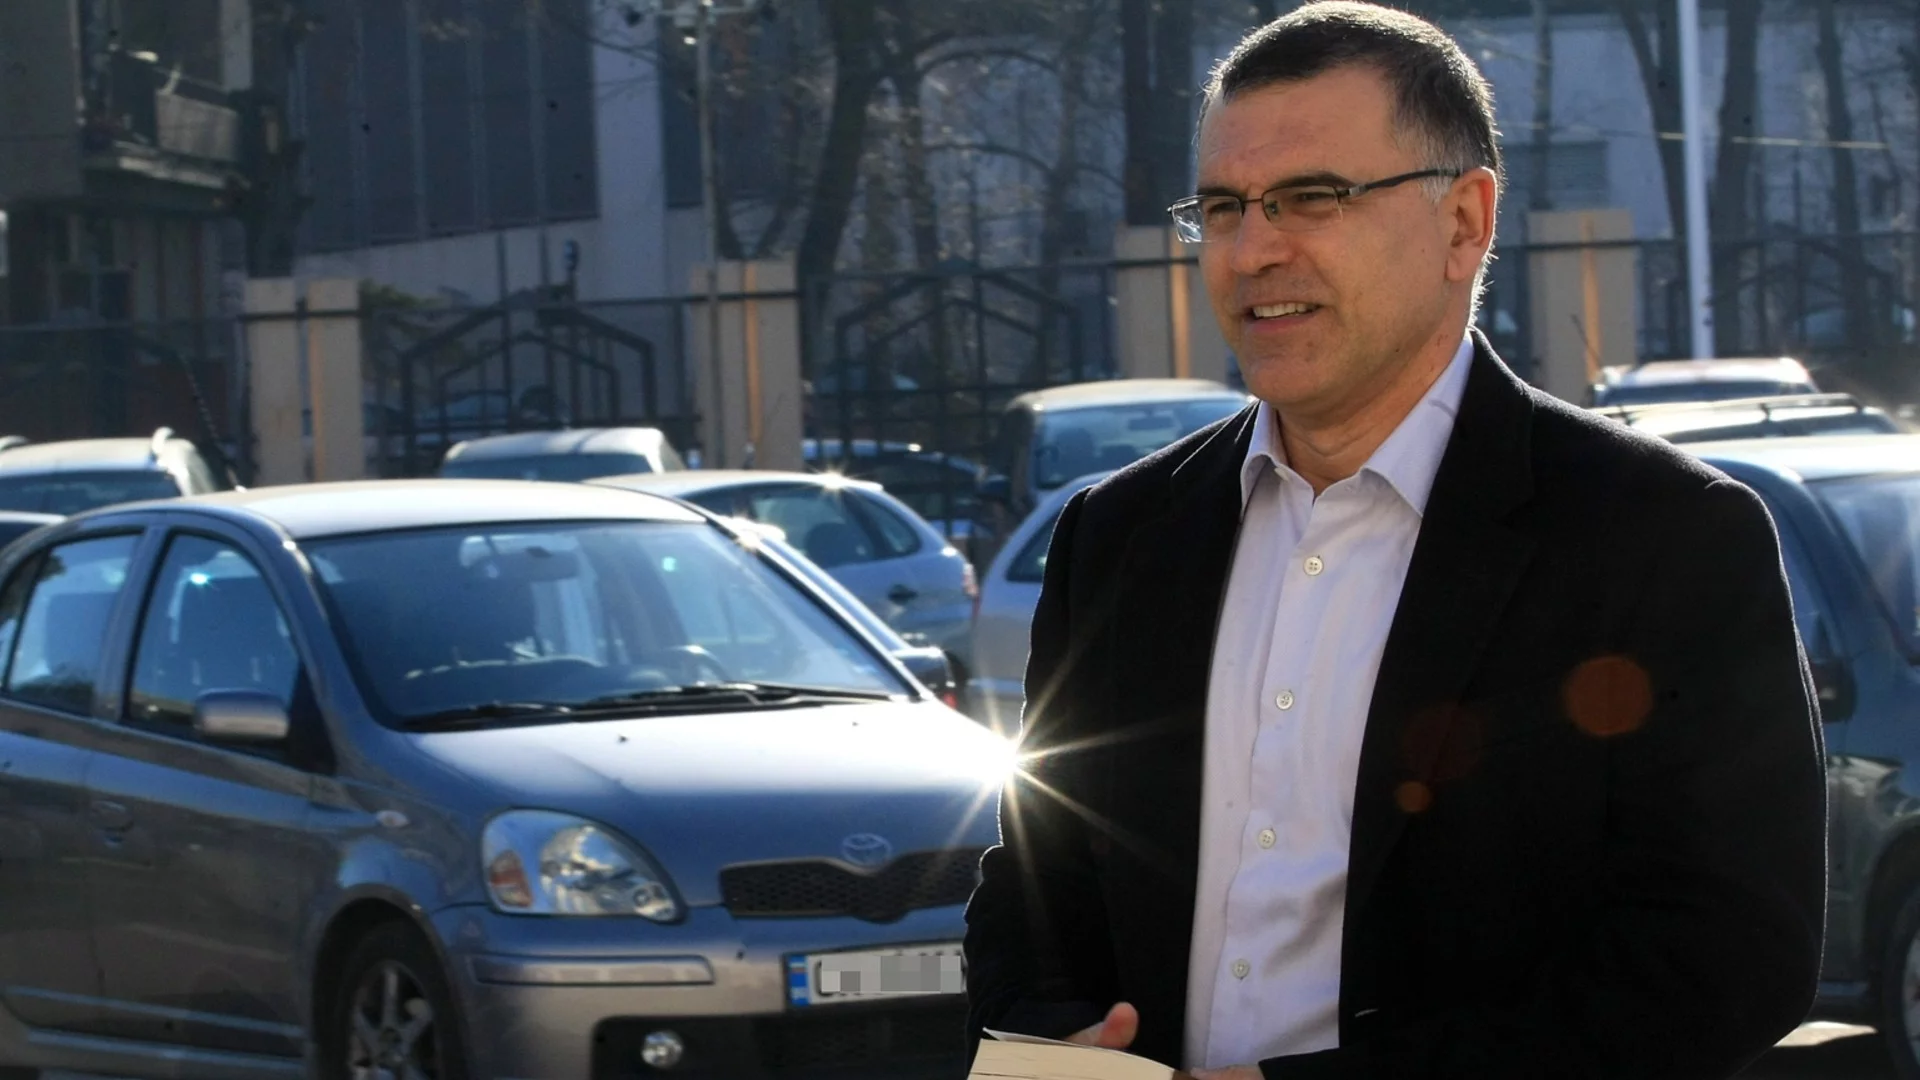 Дянков вижда правителство с премиер Бойко Борисов